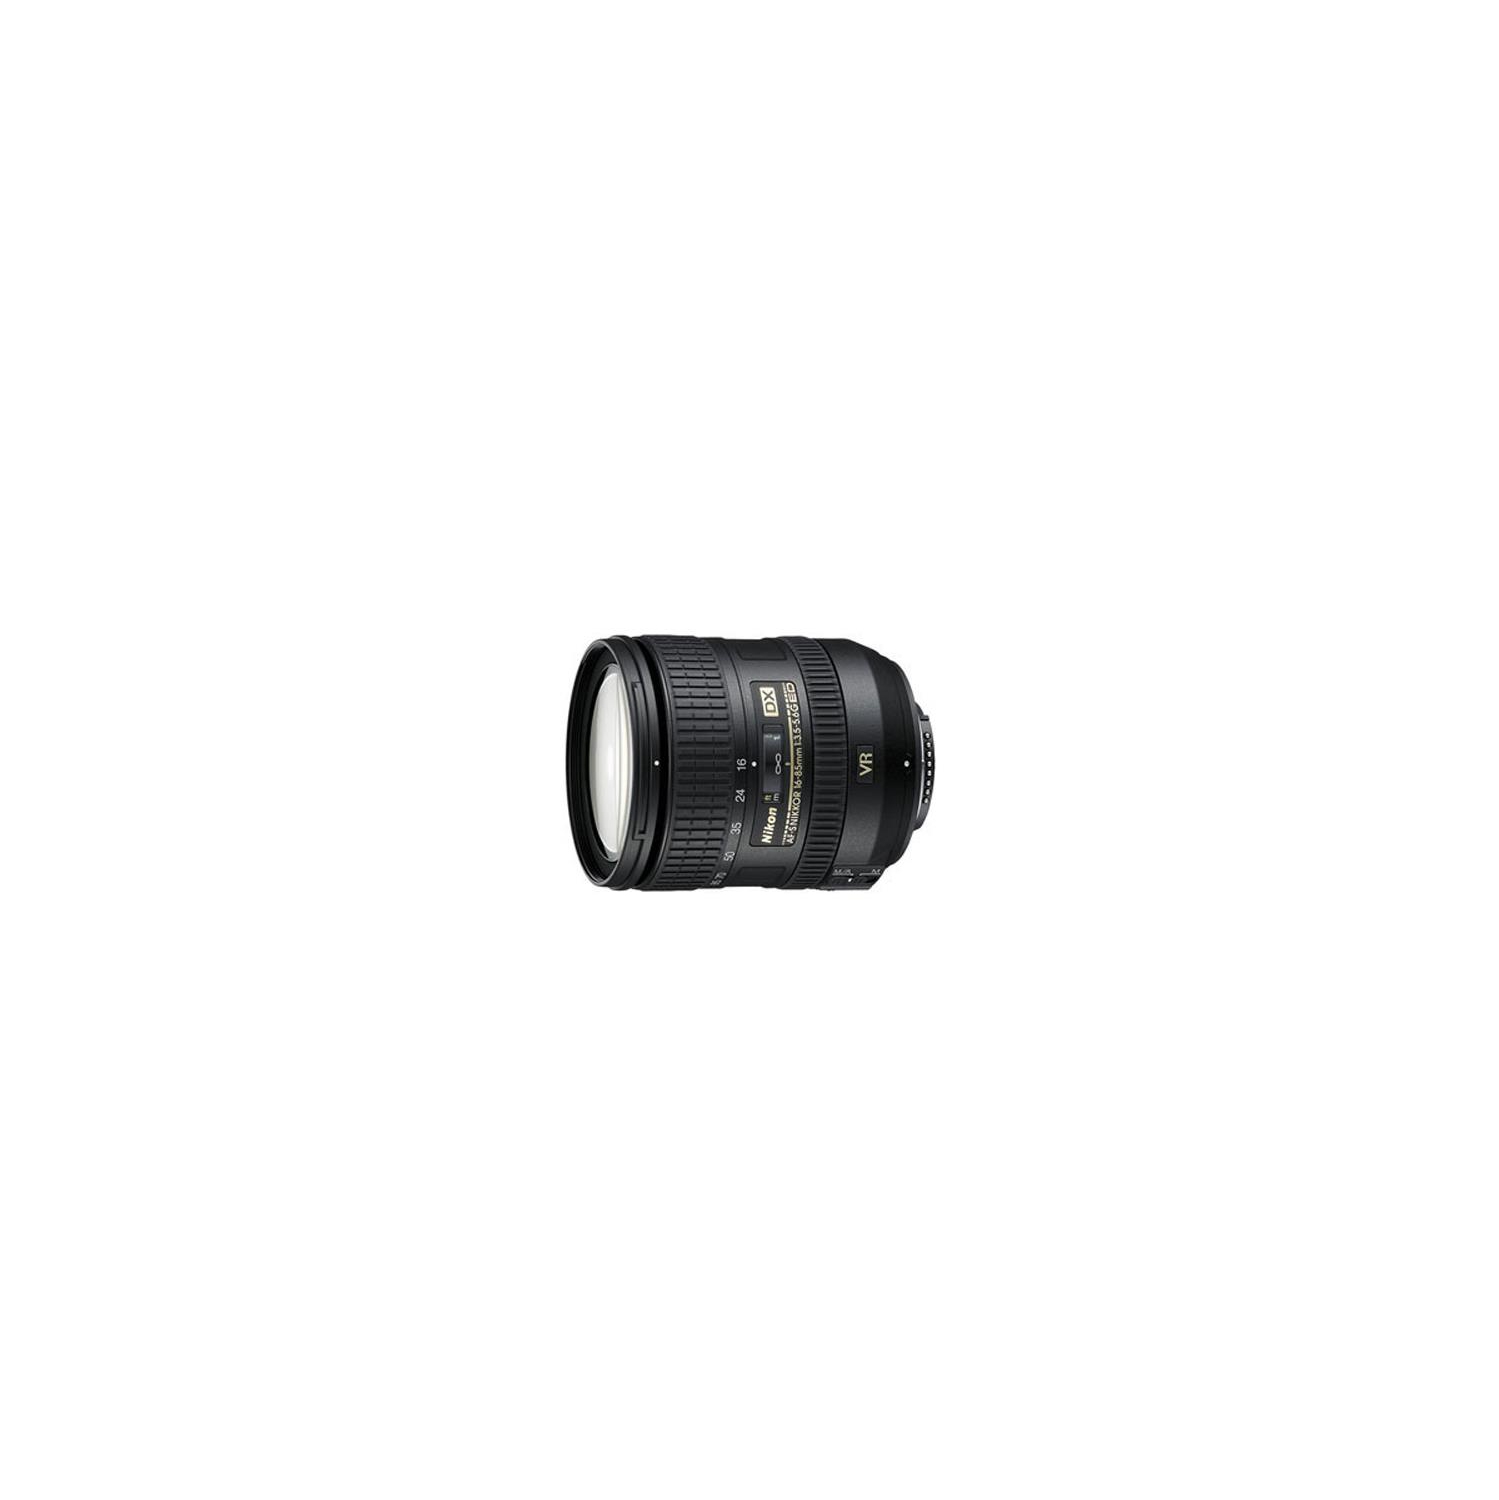 Nikon 16-85mm f3.5-5.6 G ED VR II AF-S DX Lens